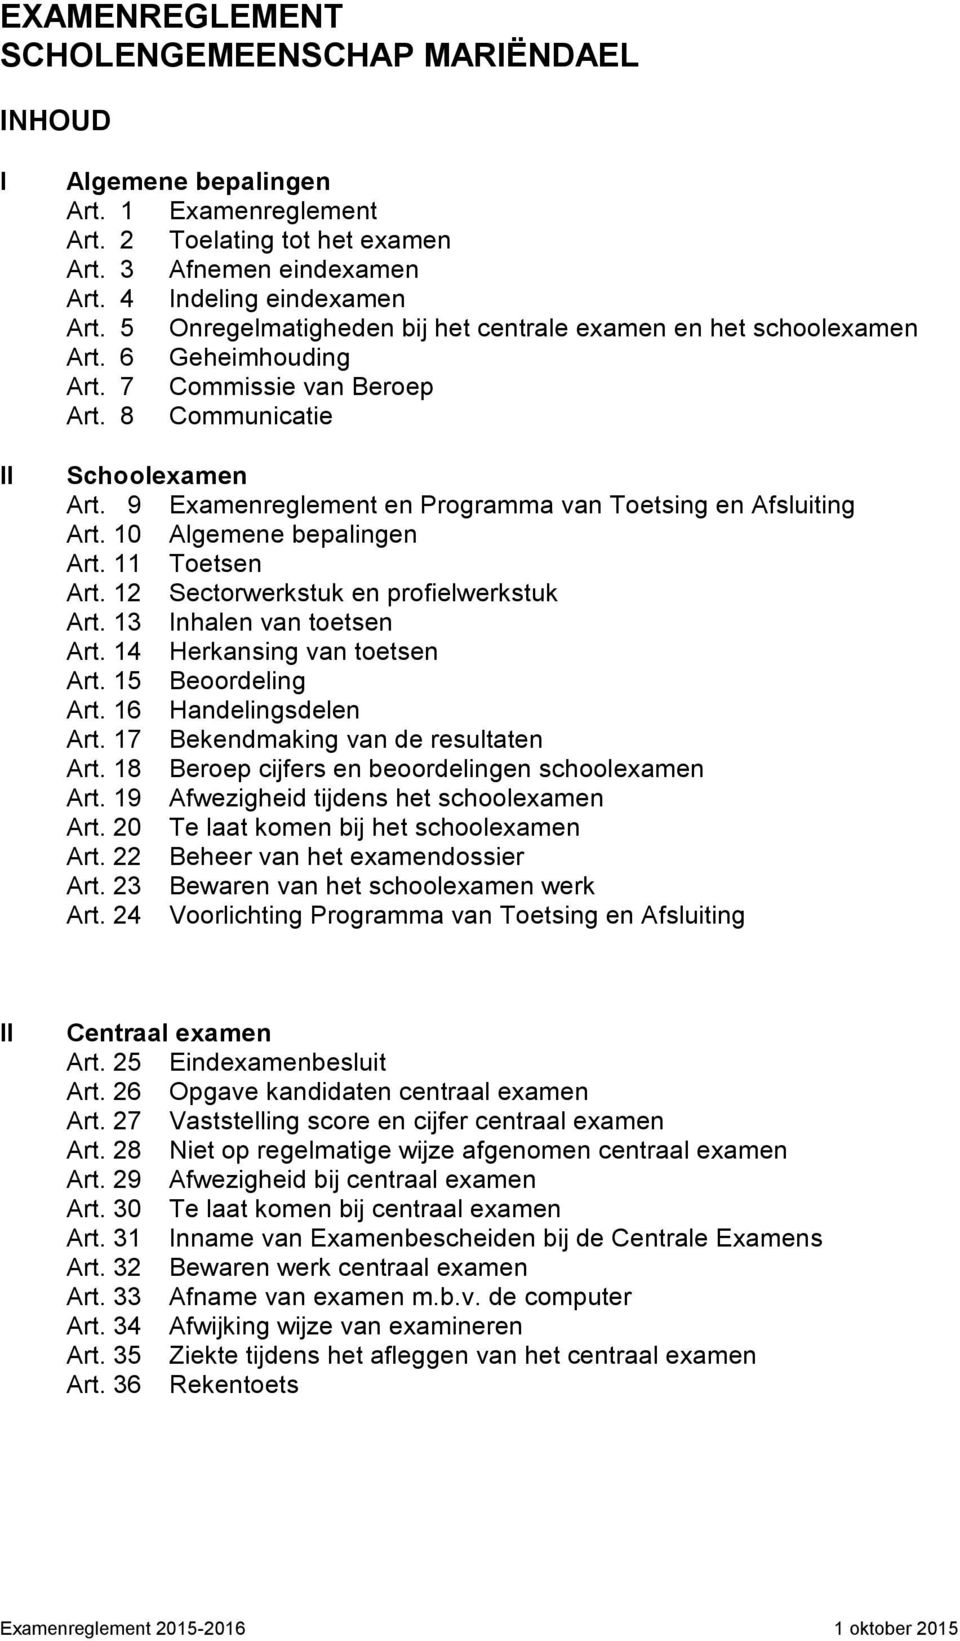 9 Examenreglement en Programma van Toetsing en Afsluiting Art. 10 Algemene bepalingen Art. 11 Toetsen Art. 12 Sectorwerkstuk en profielwerkstuk Art. 13 Inhalen van toetsen Art.